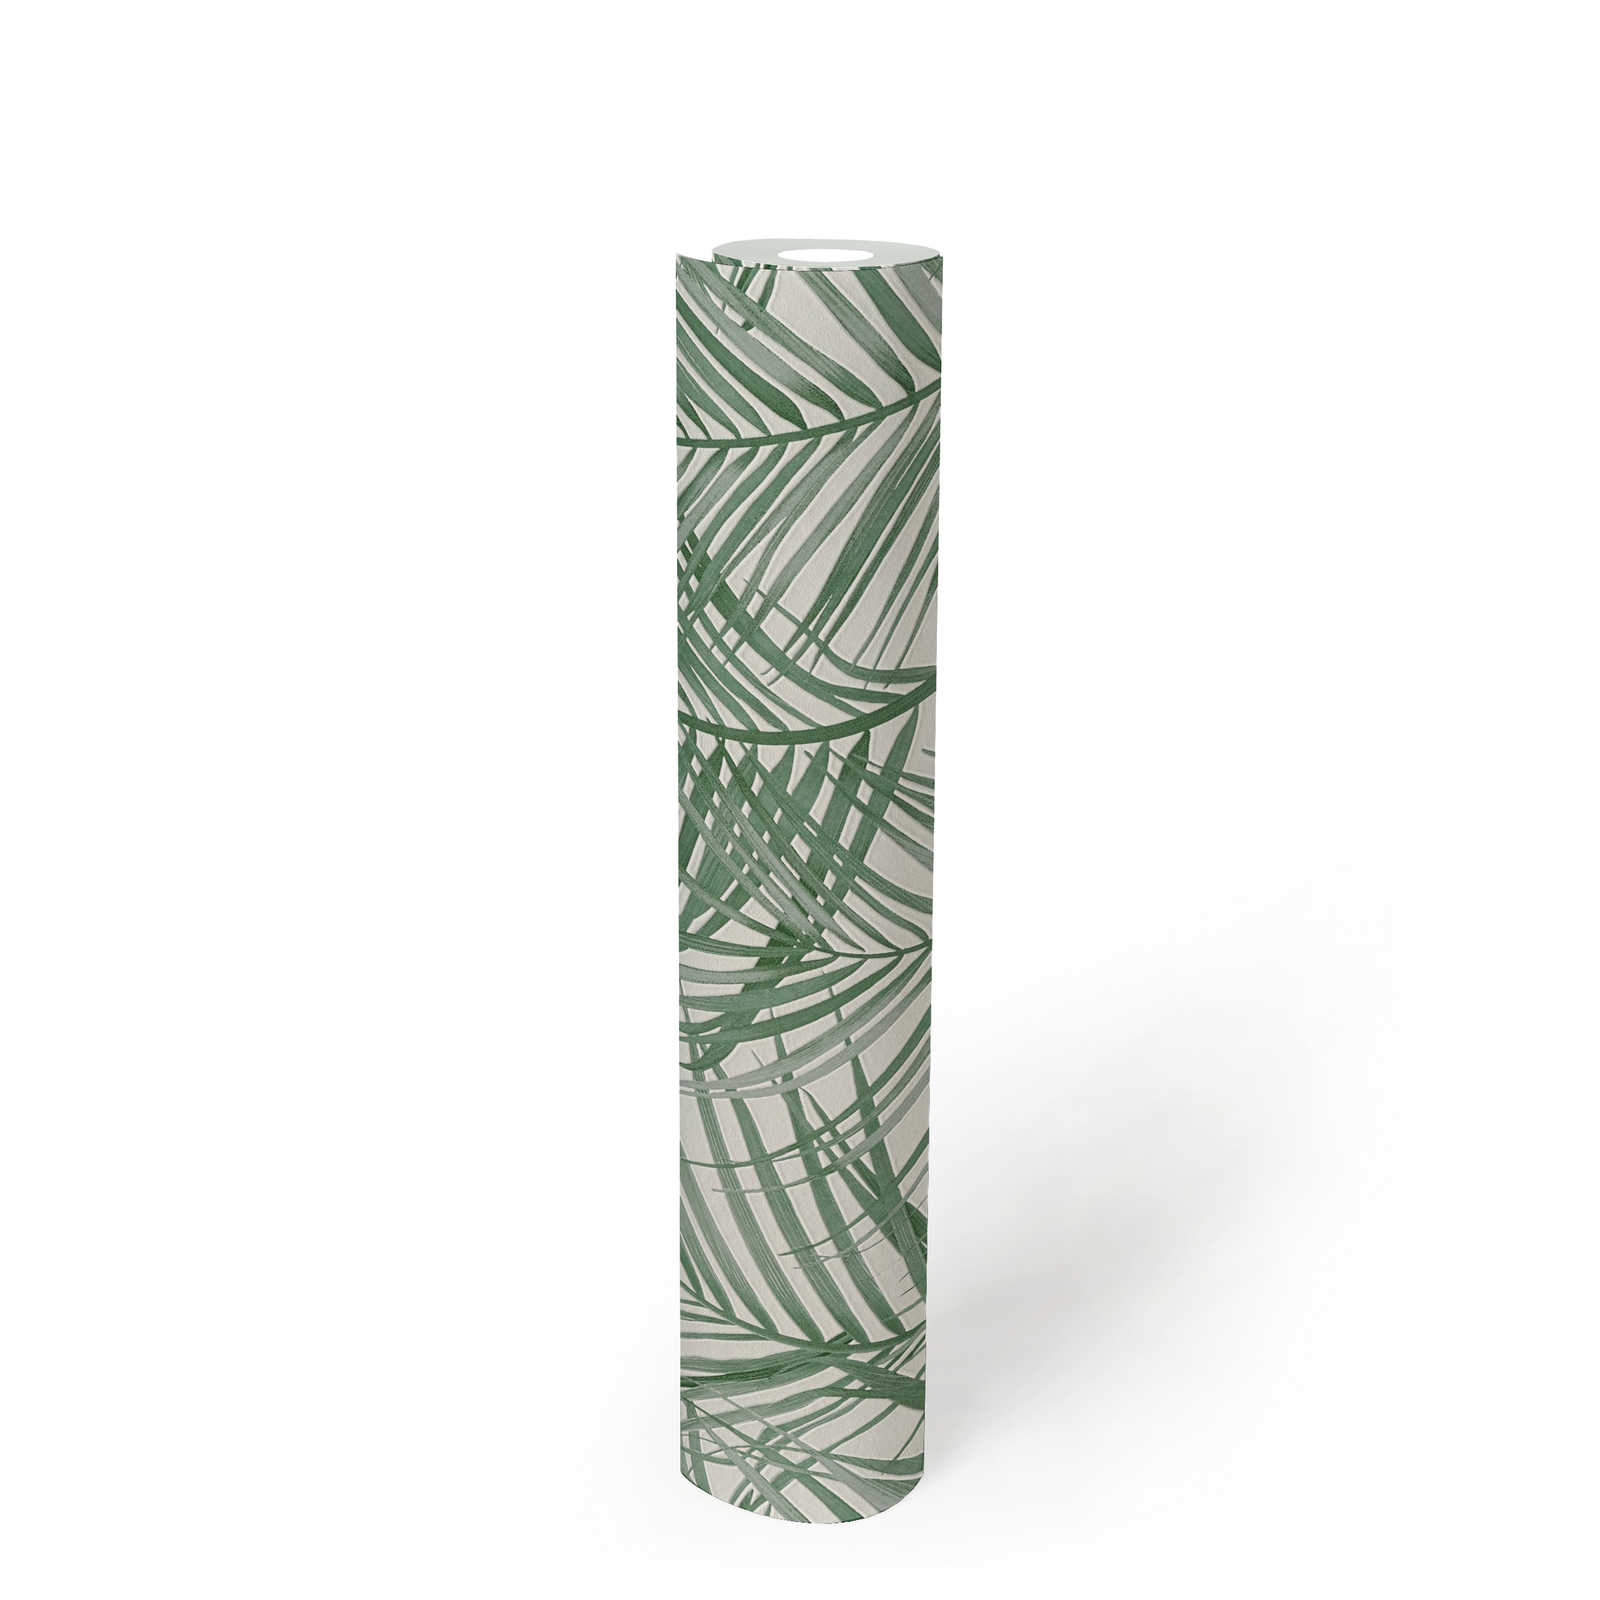             Vliesbehang met groot palmboompatroon - groen, wit
        